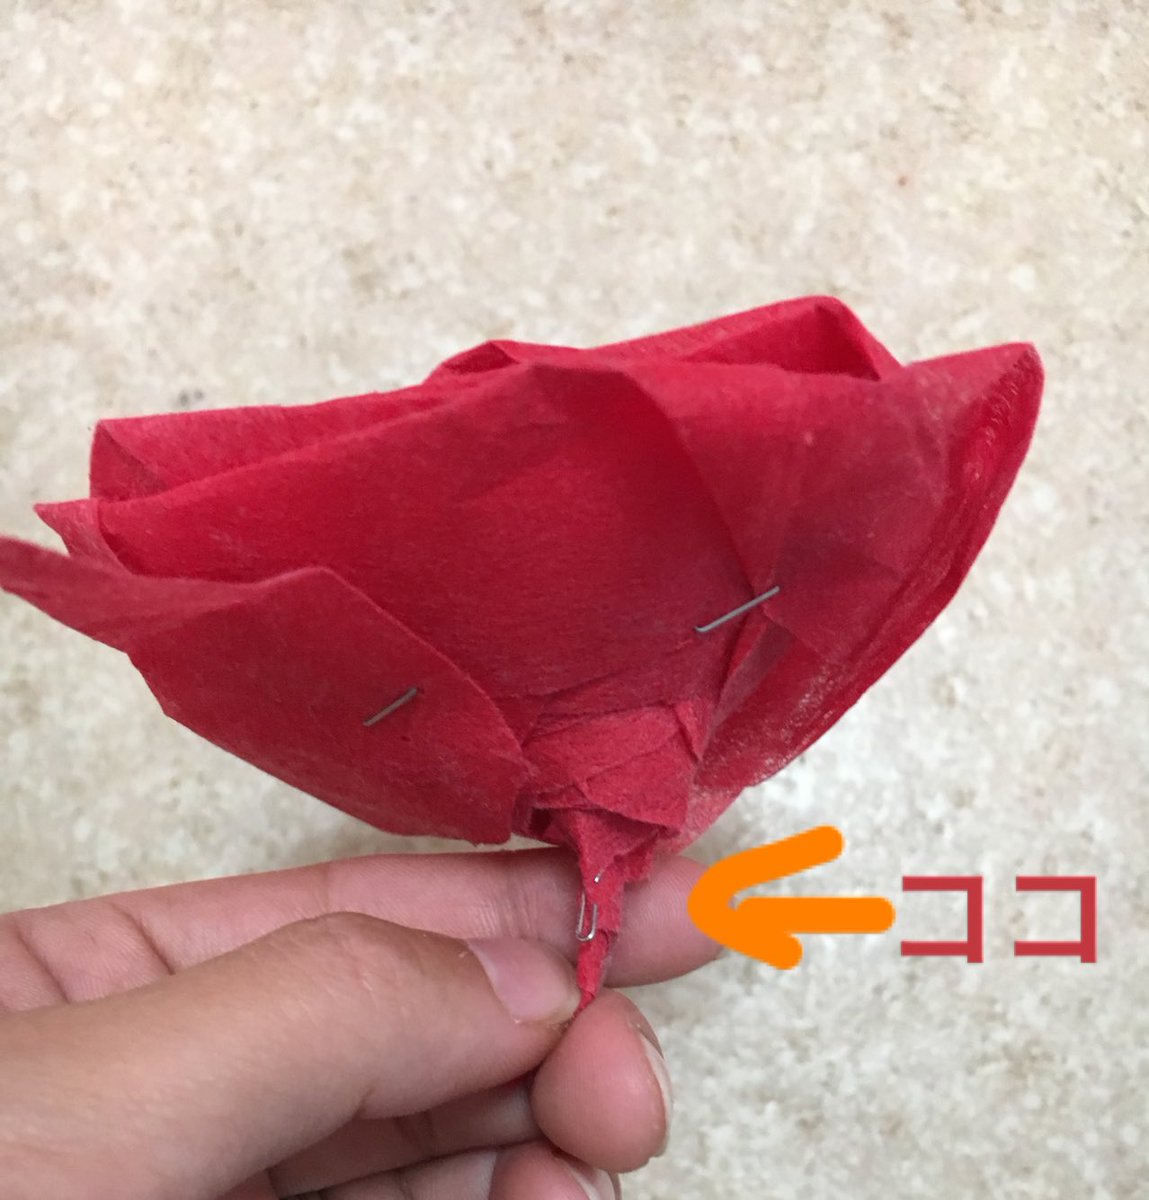 ダンデリオンlarp 状況が落ち着くまで 不織布アレンジ 薔薇の作り方 この薔薇も 不織布で作ったものです 長いリボン状にした不織布を折ってまとめていくだけで簡単に作れます その作り方を後述でご紹介していきましょう T Co Sseppare1c